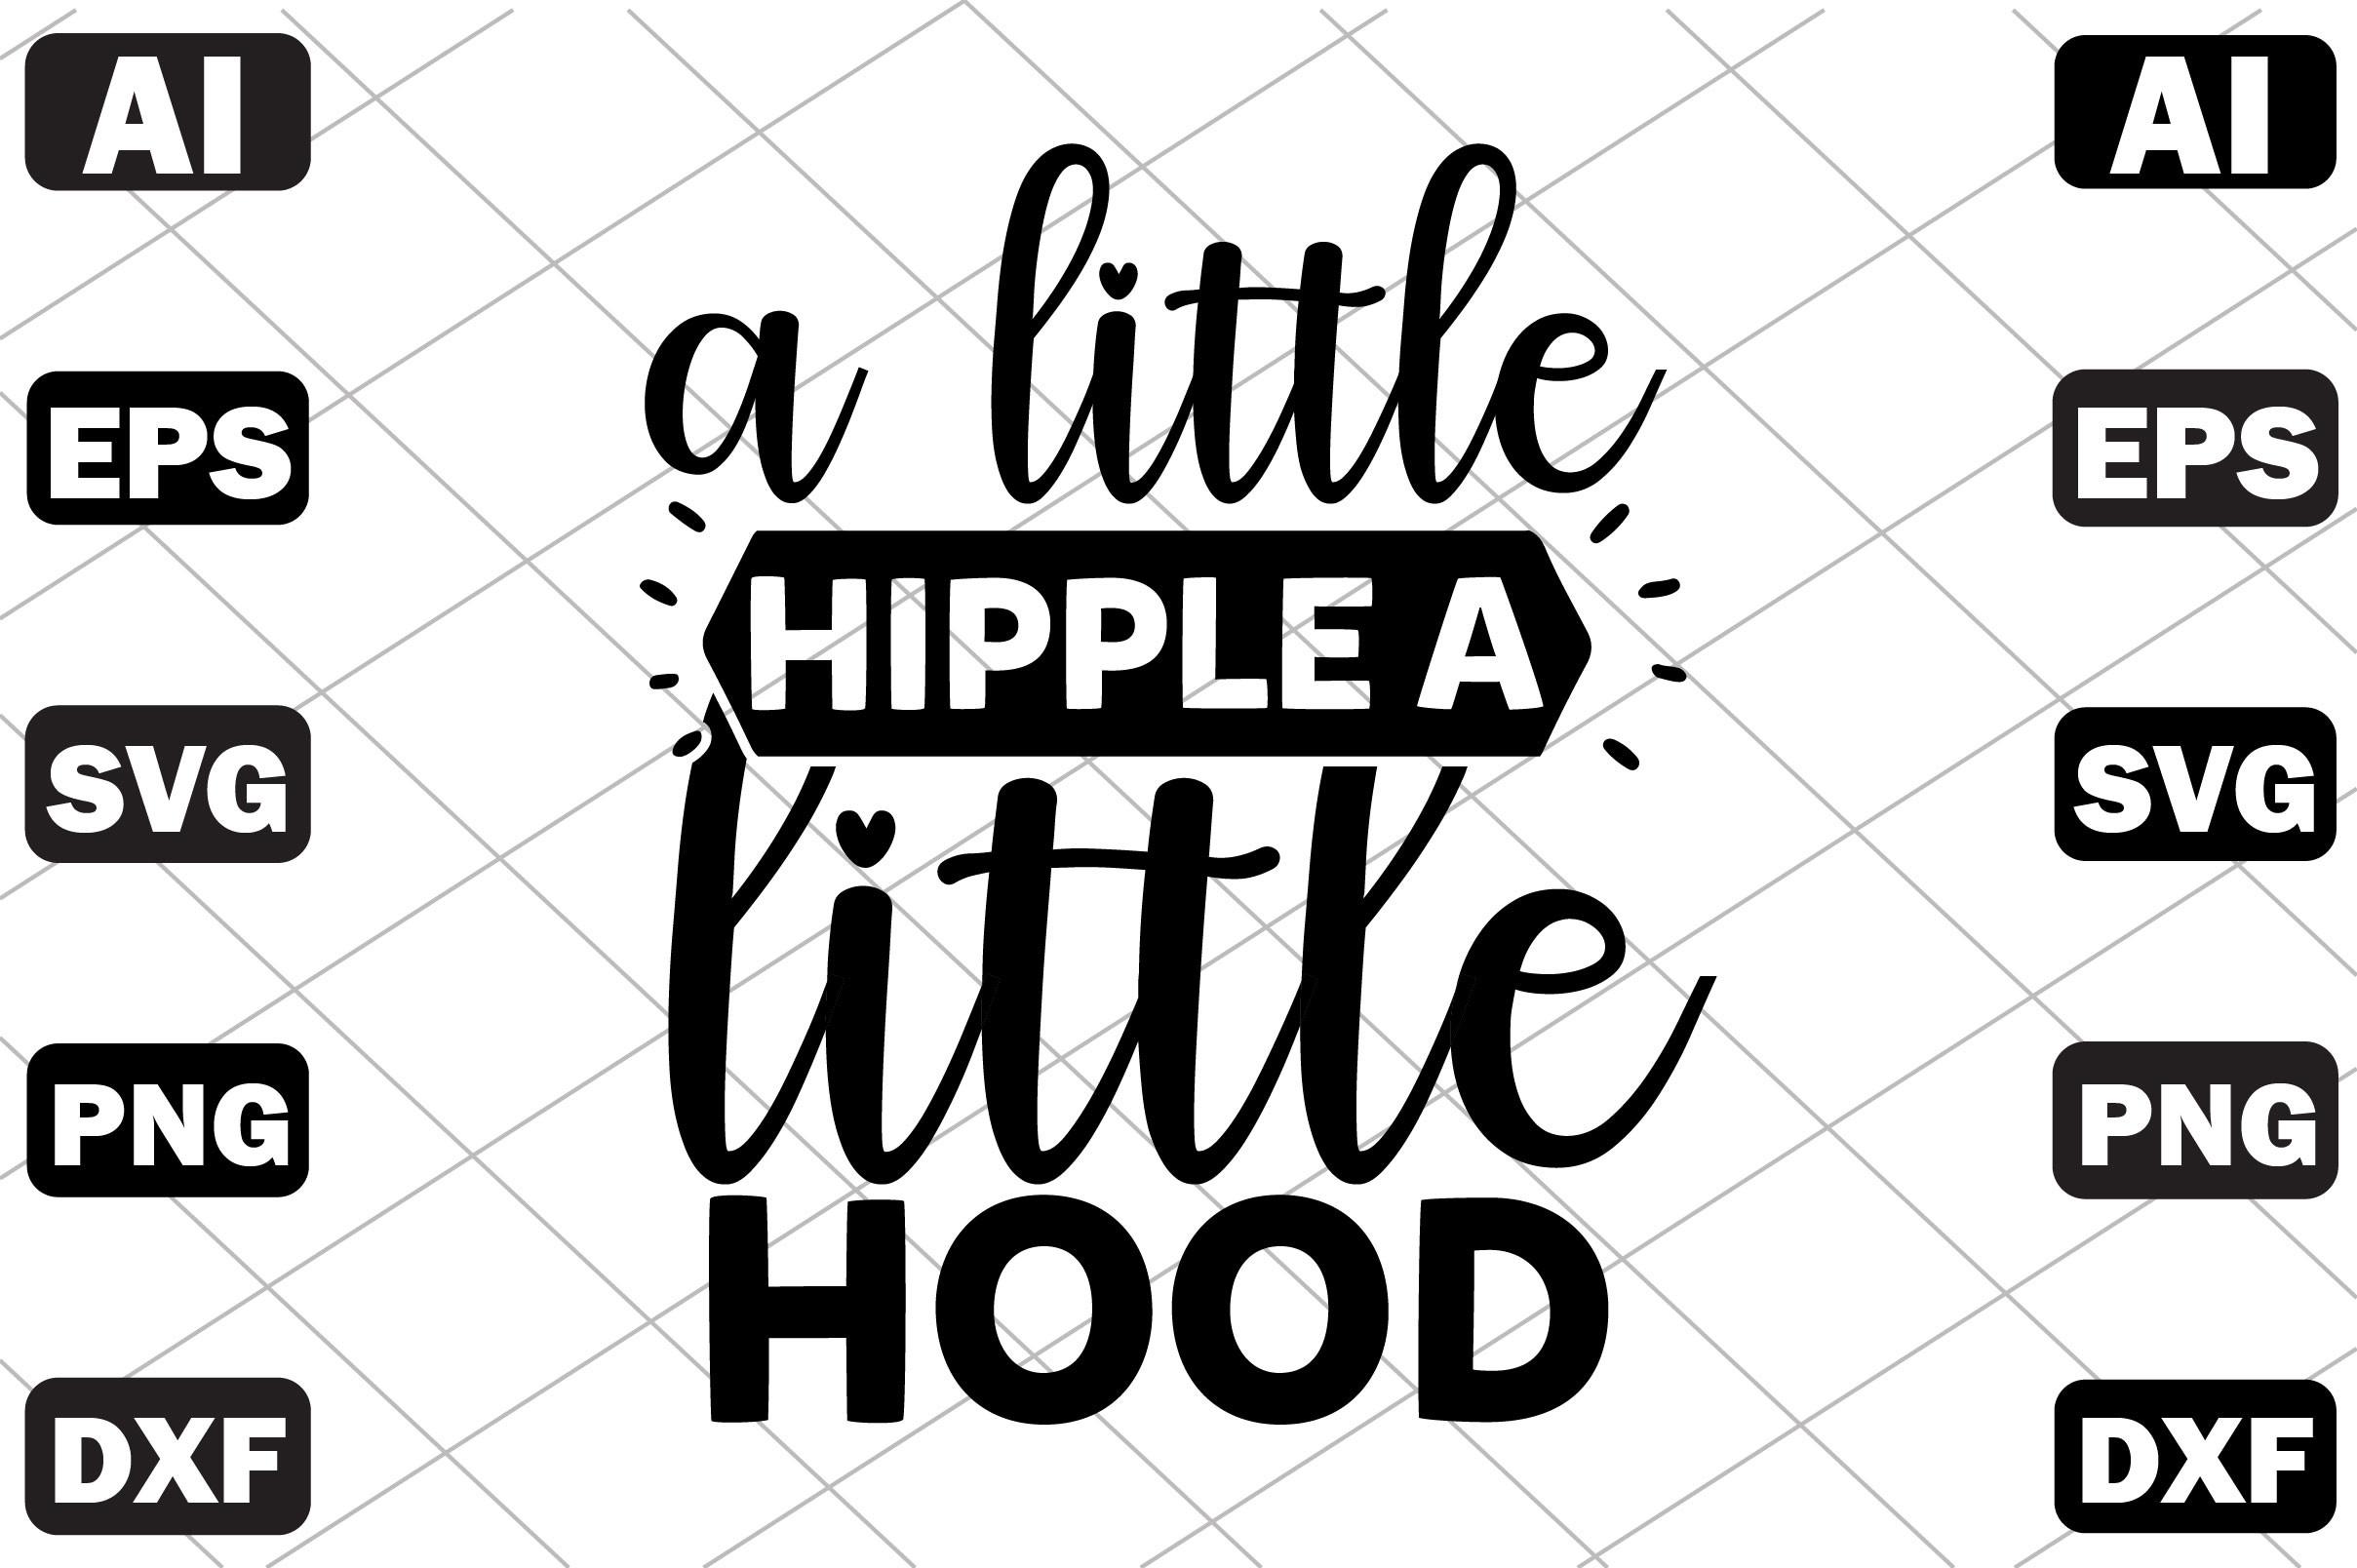 A Little Hipple a Little Hood